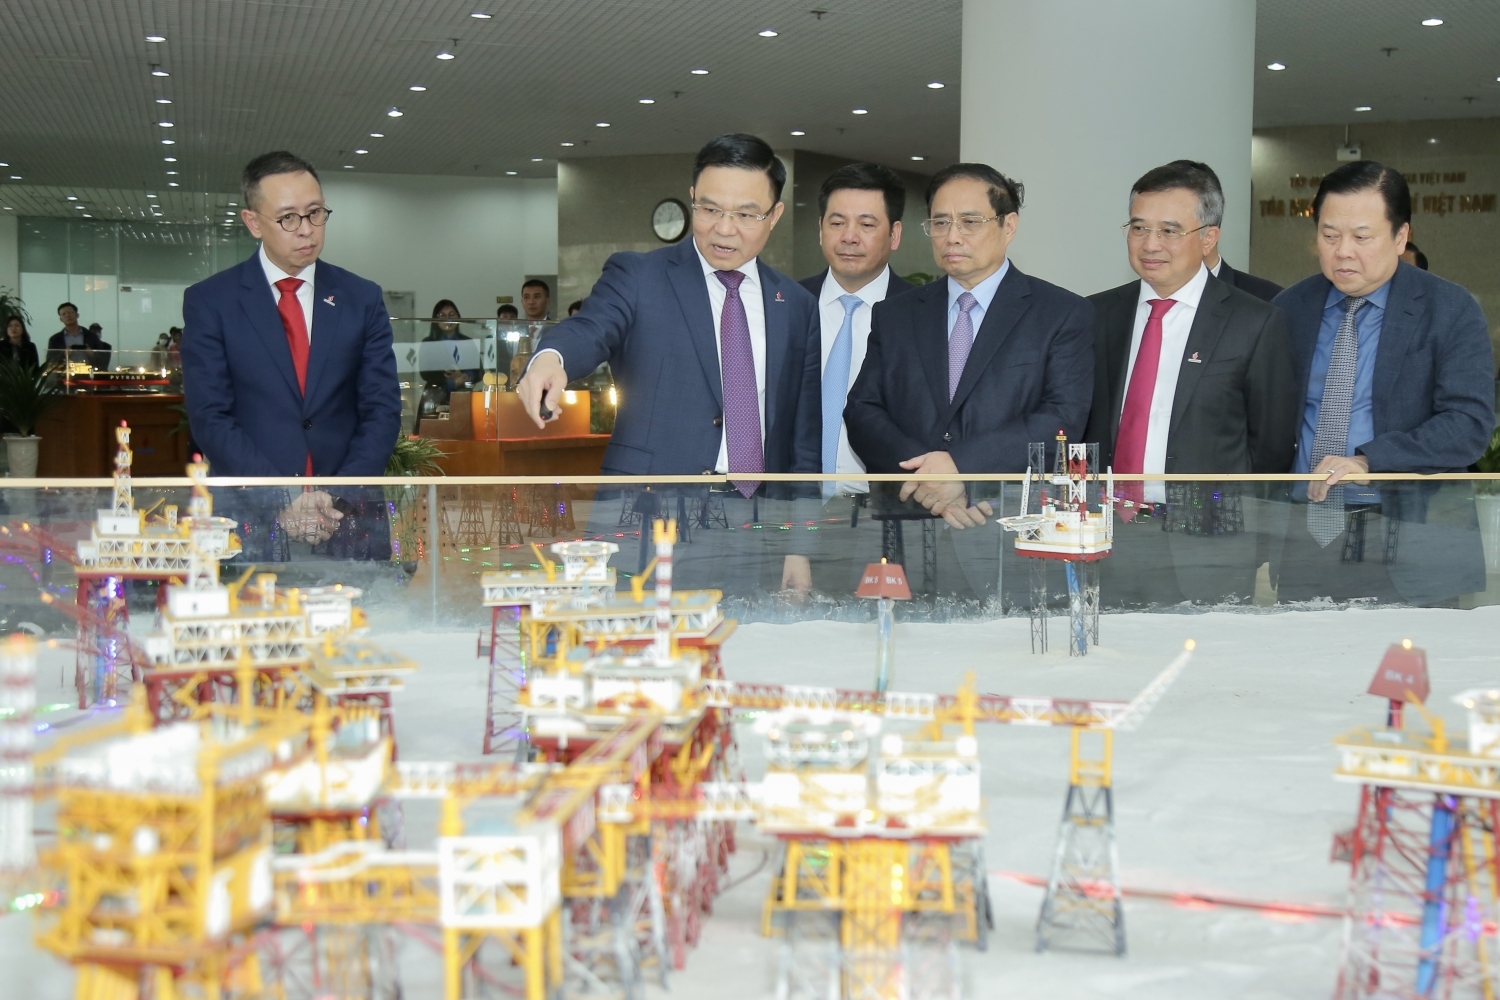 Thủ tướng Chính phủ Phạm Minh Chính nghe giới thiệu về hoạt động dầu khí tại mỏ Bạch Hổ, mỏ dầu khai thác đầu tiên tại Việt Nam